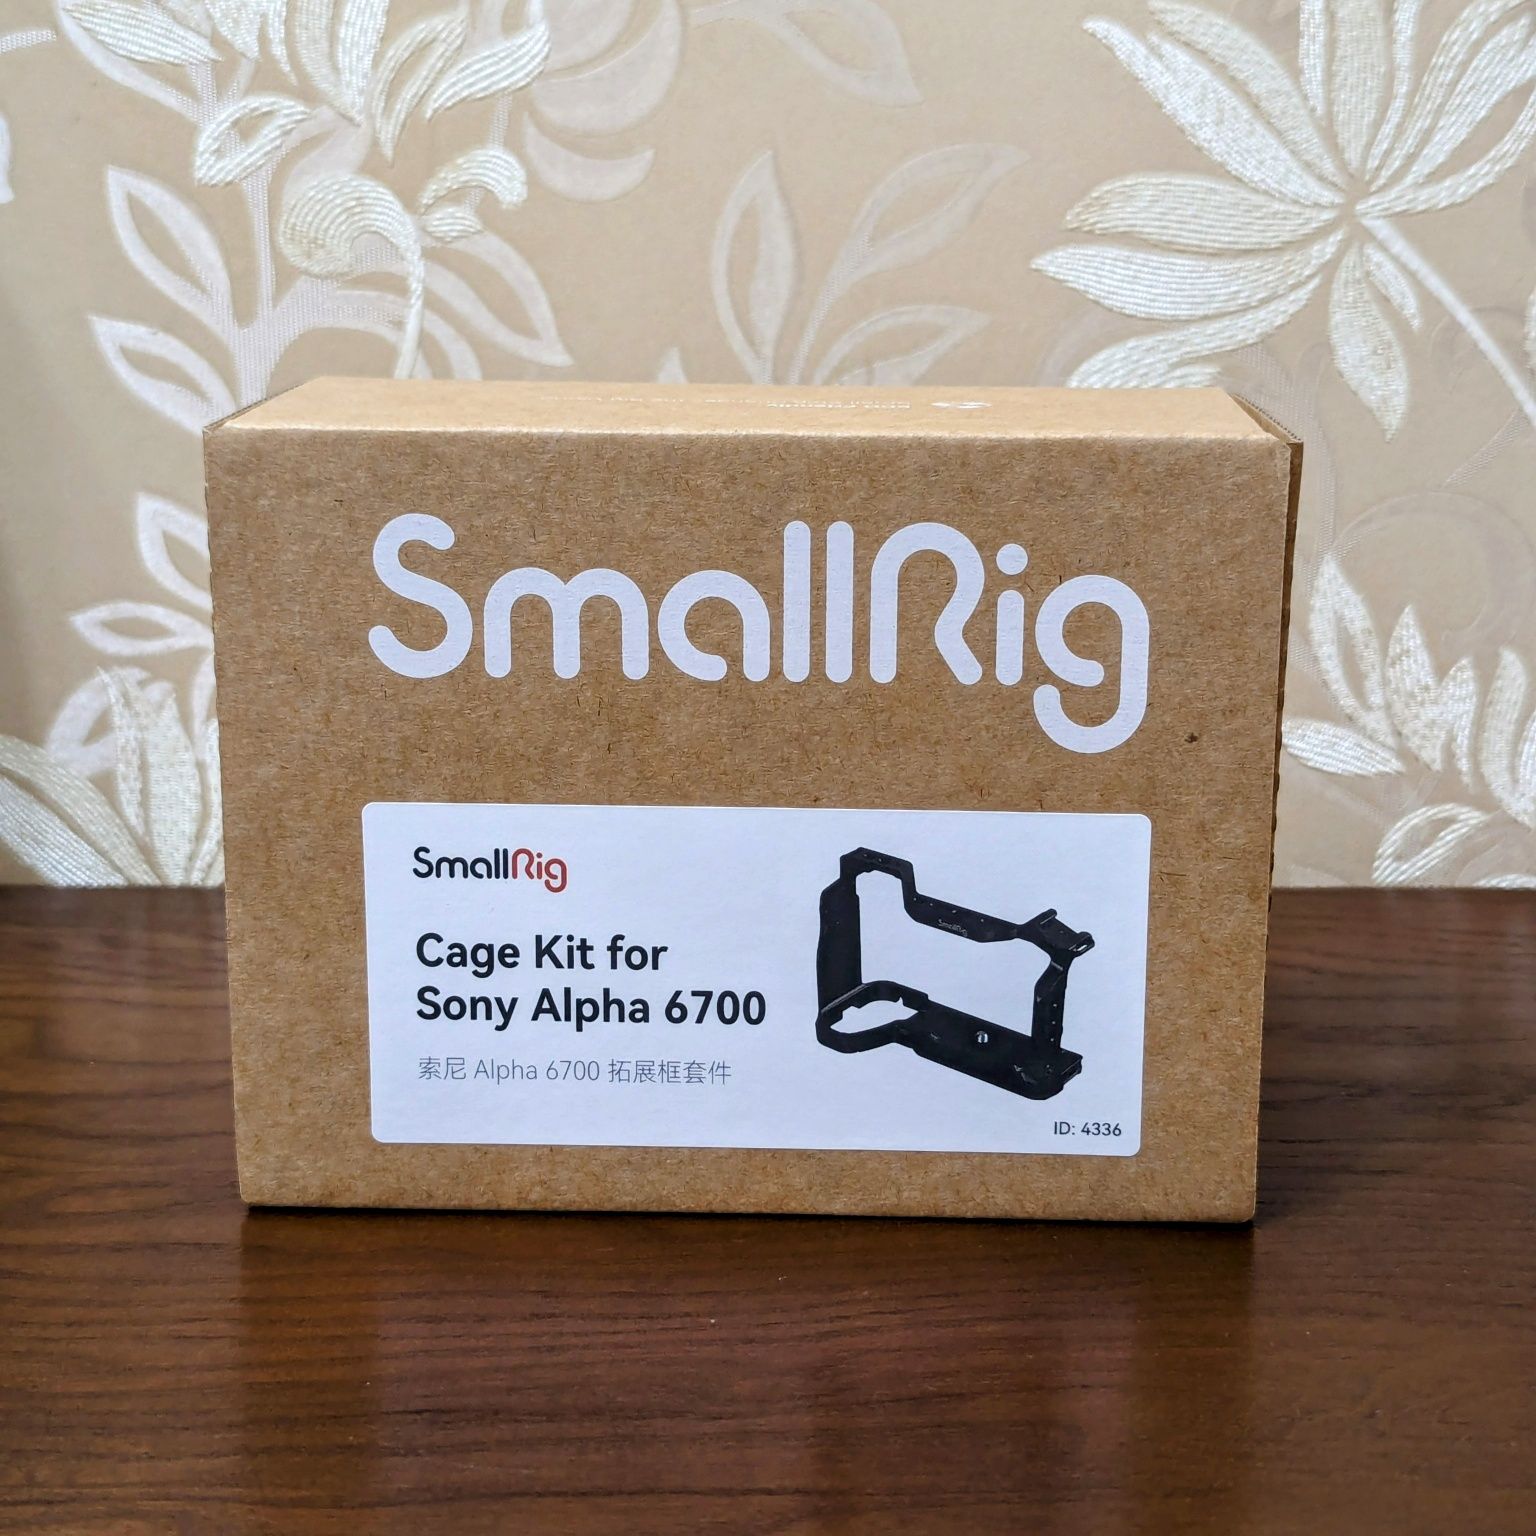 Клітка SmallRig Cage Kit 4336 для Sony A6700 торг